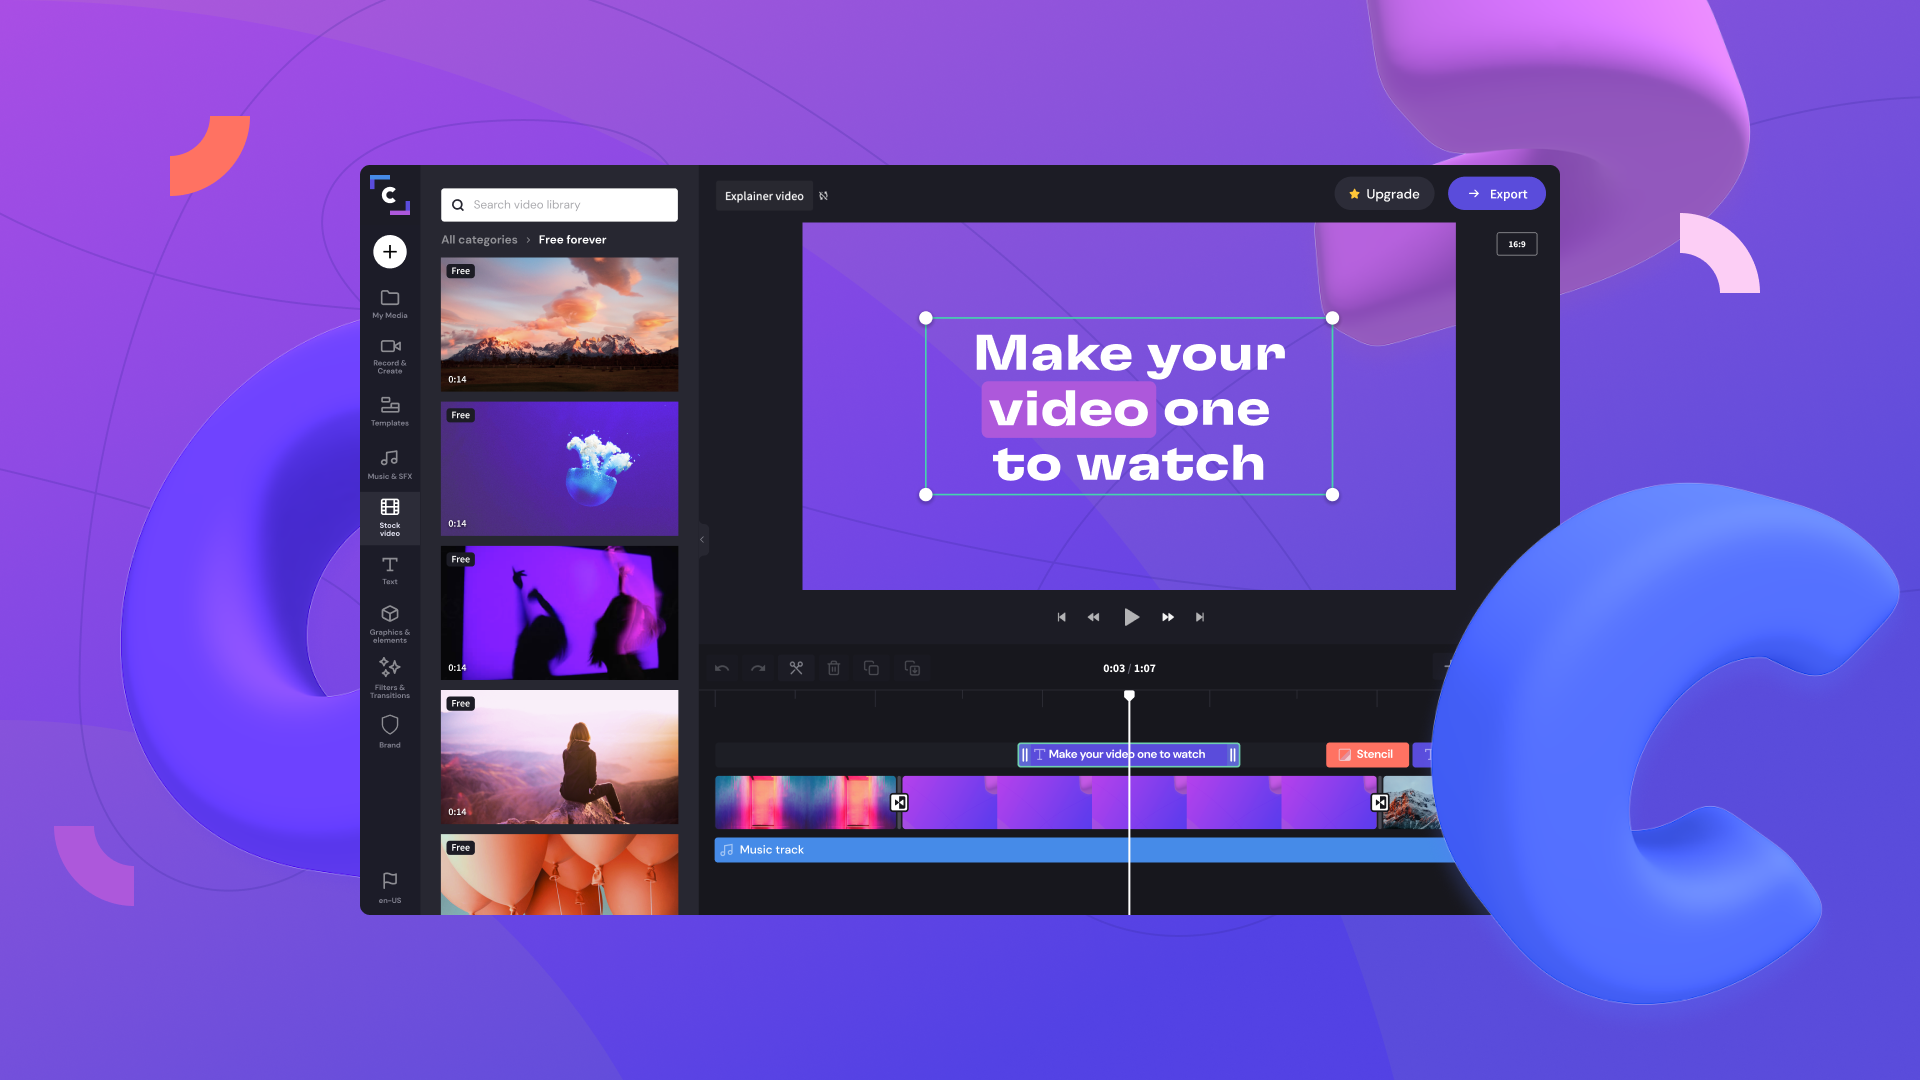 Clipchamp қолданбасының скриншоты түрлі-түсті фонда орналасқан. Clipchamp қолданбасында өңделетін бейне "Make your video one to watch" мәтінін қамтиды.